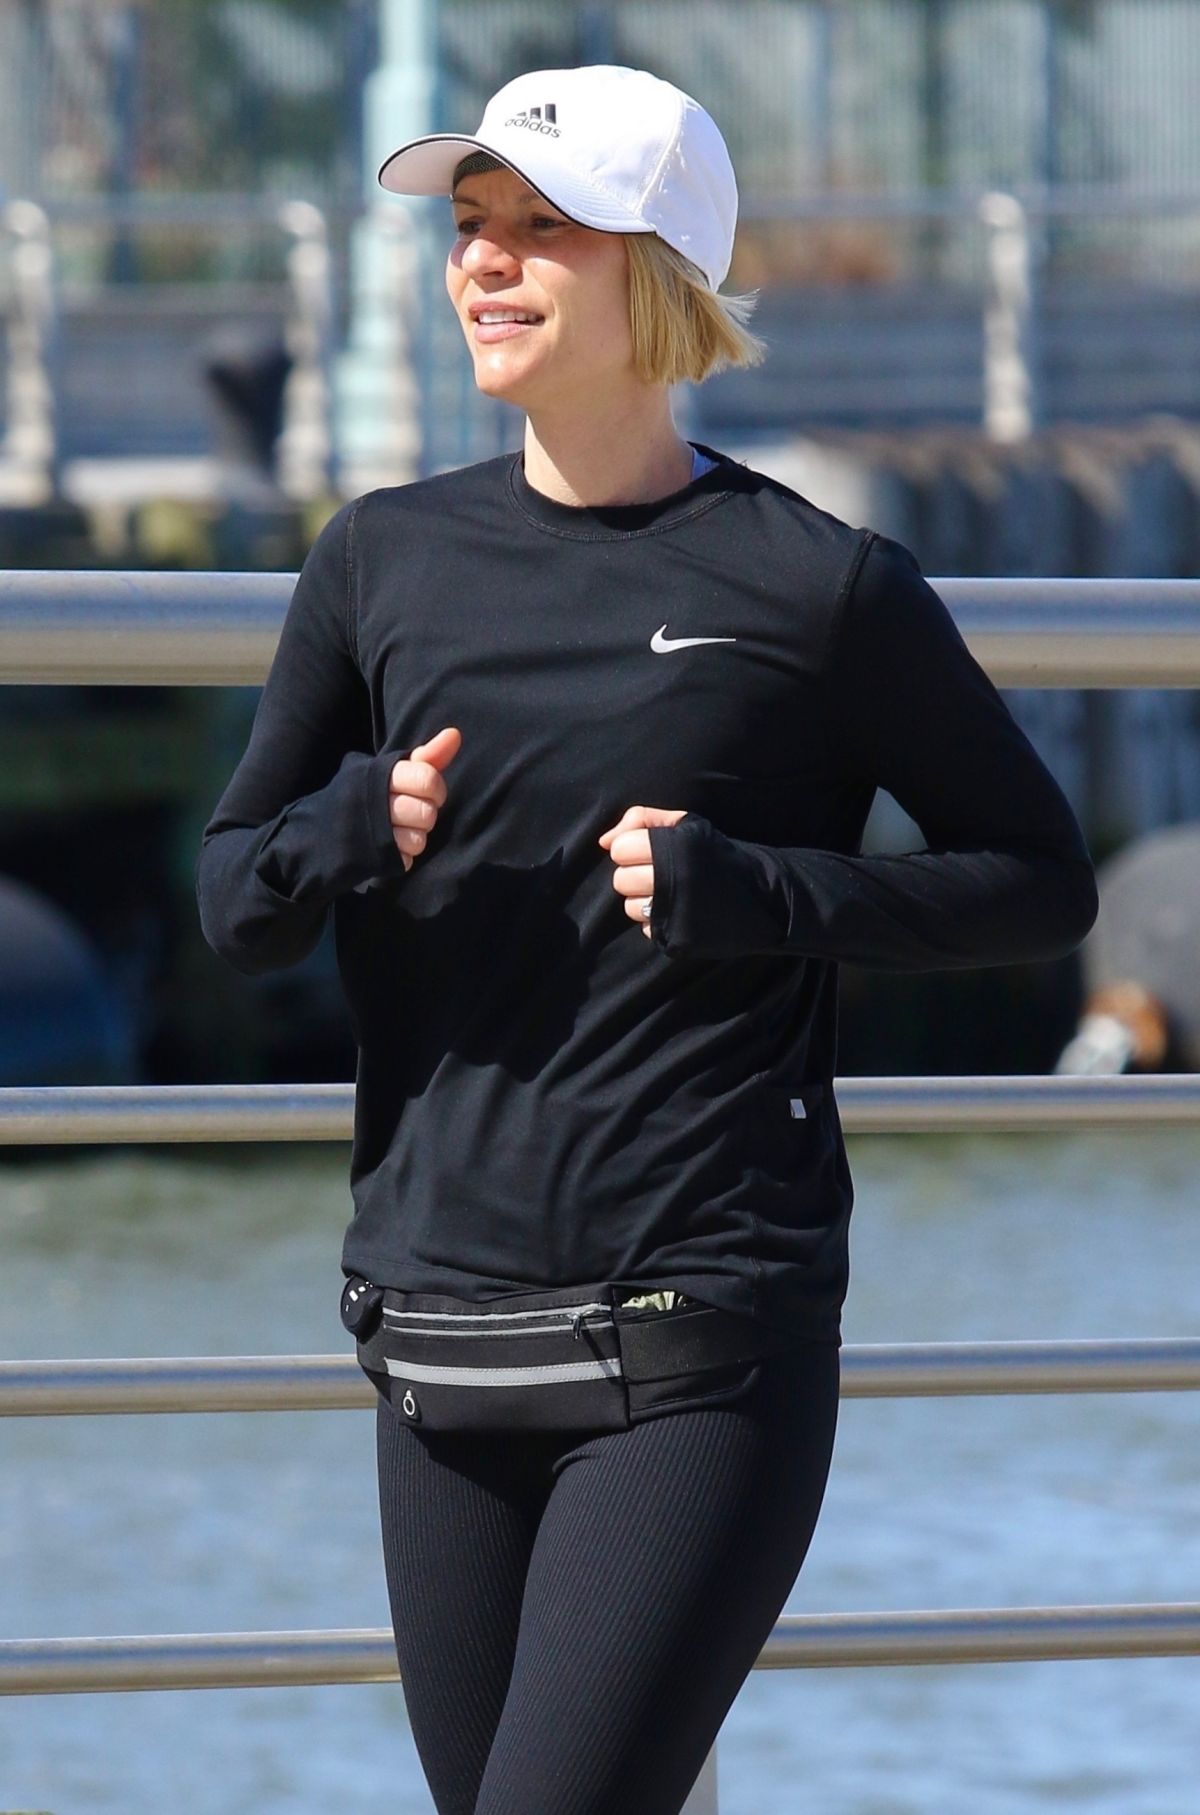 CLAIRE DANES Out Jogging in Hudson River Park 04/15/2022 – HawtCelebs